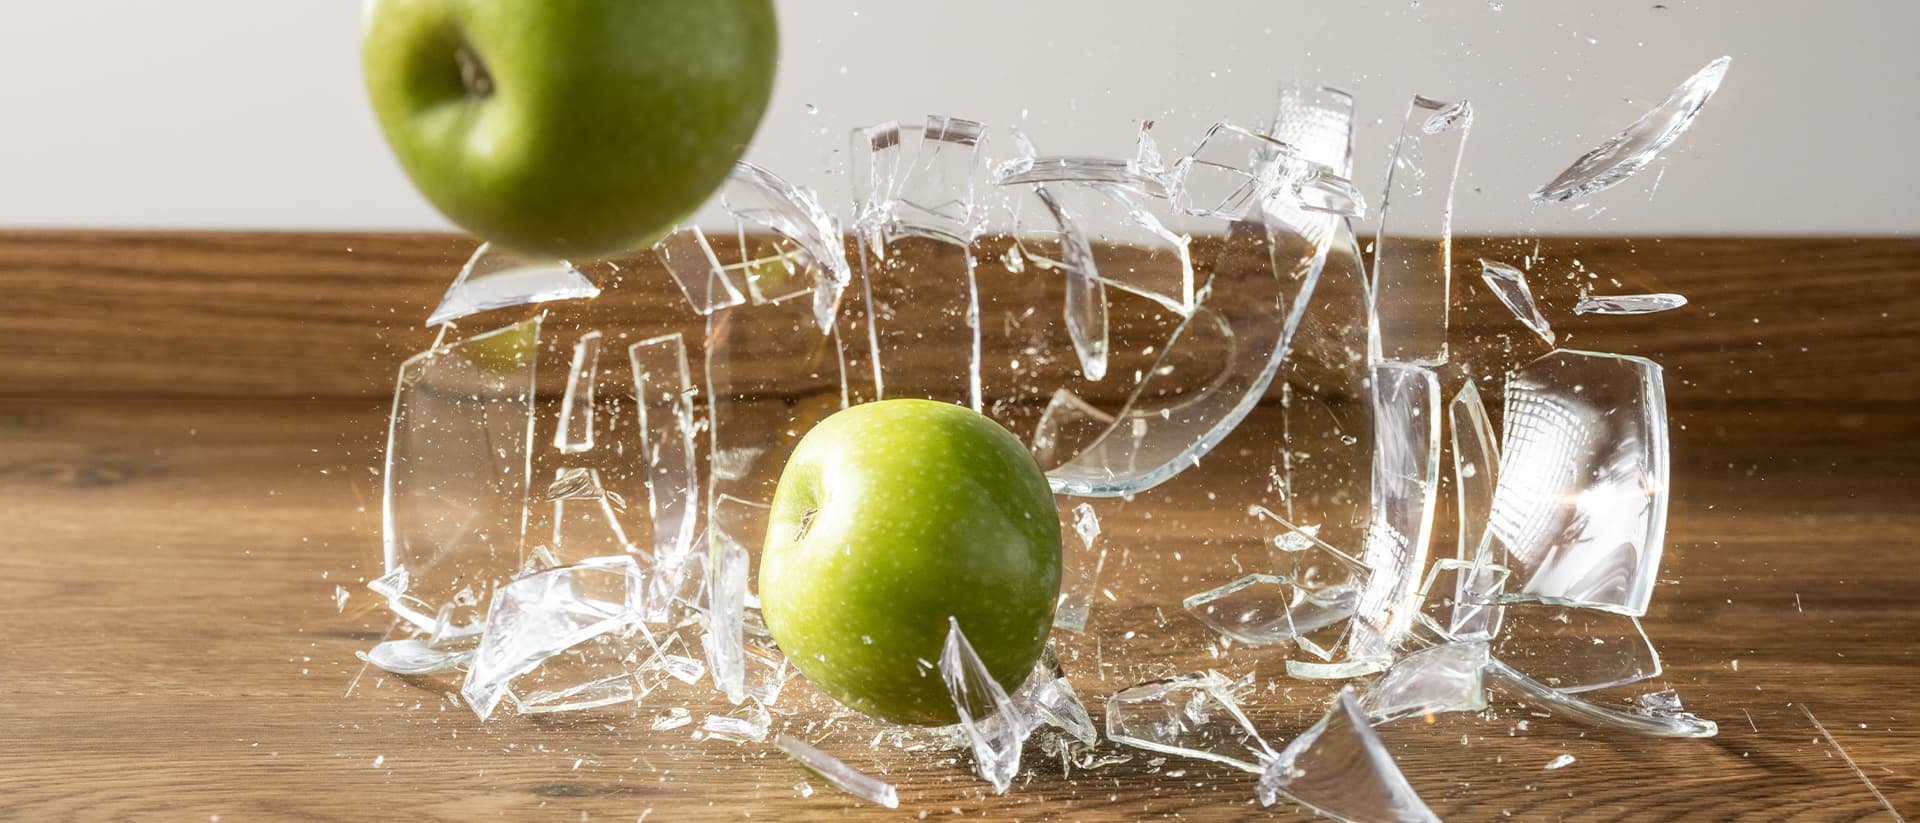 szklany wazon z jabłkami spada na brązową, winylową podłogę i pęka